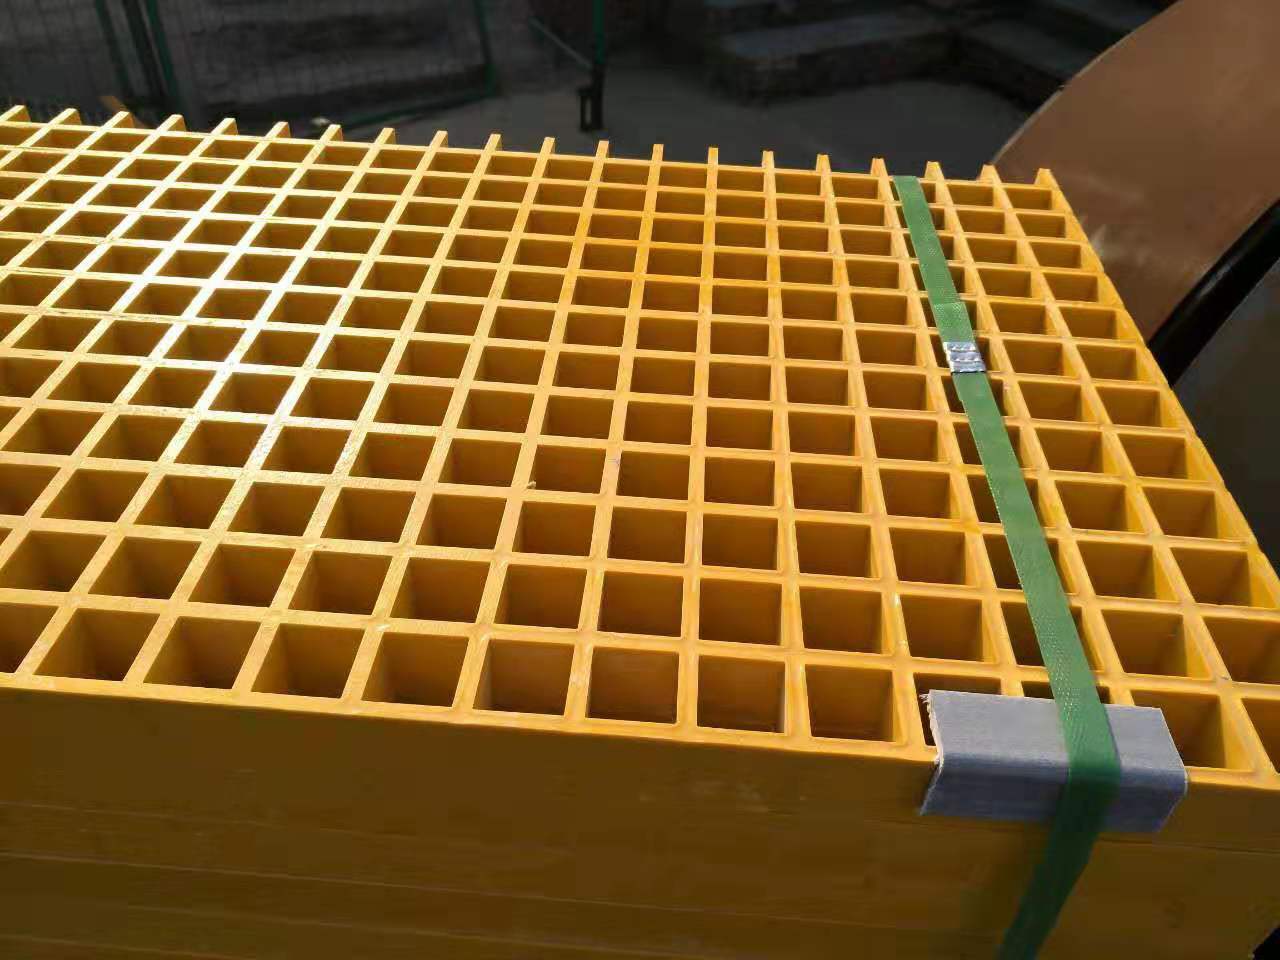 石家庄精华钢格板厂家 直销 玻璃钢格栅盖板网格板 复合材料格栅盖板2